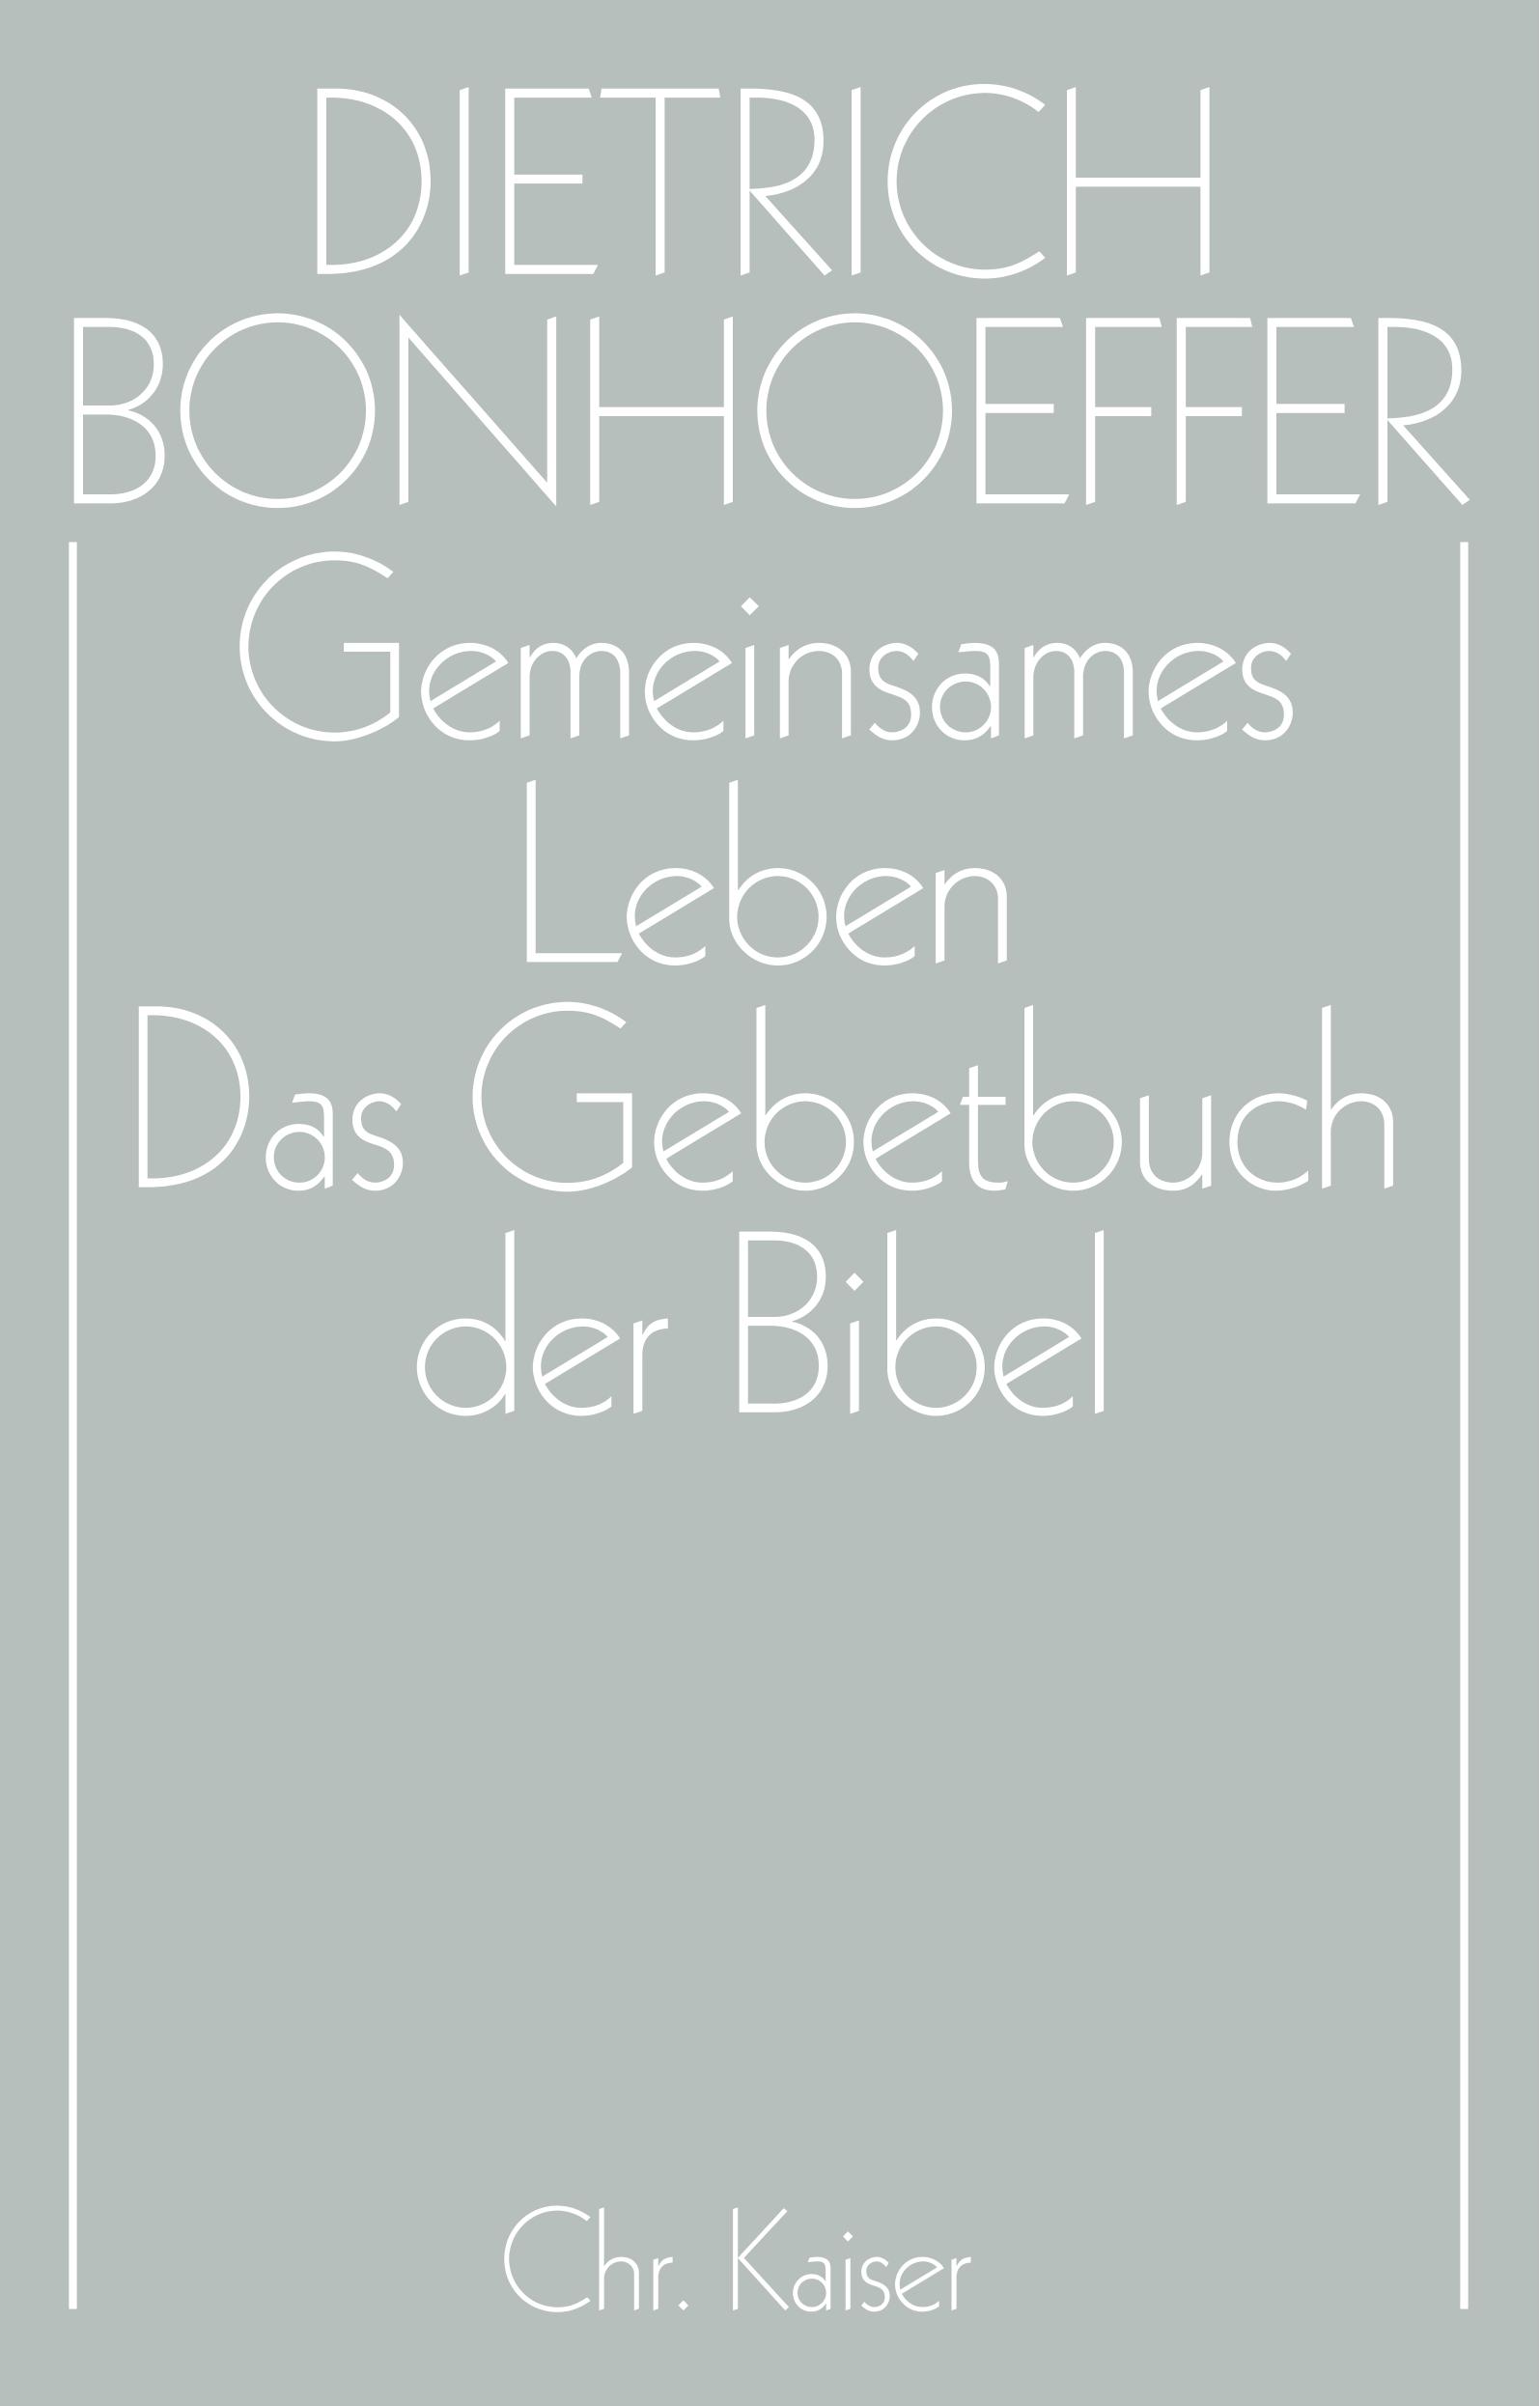 Gemeinsames Leben /Das Gebetbuch der Bibel - Bonhoeffer, Dietrich